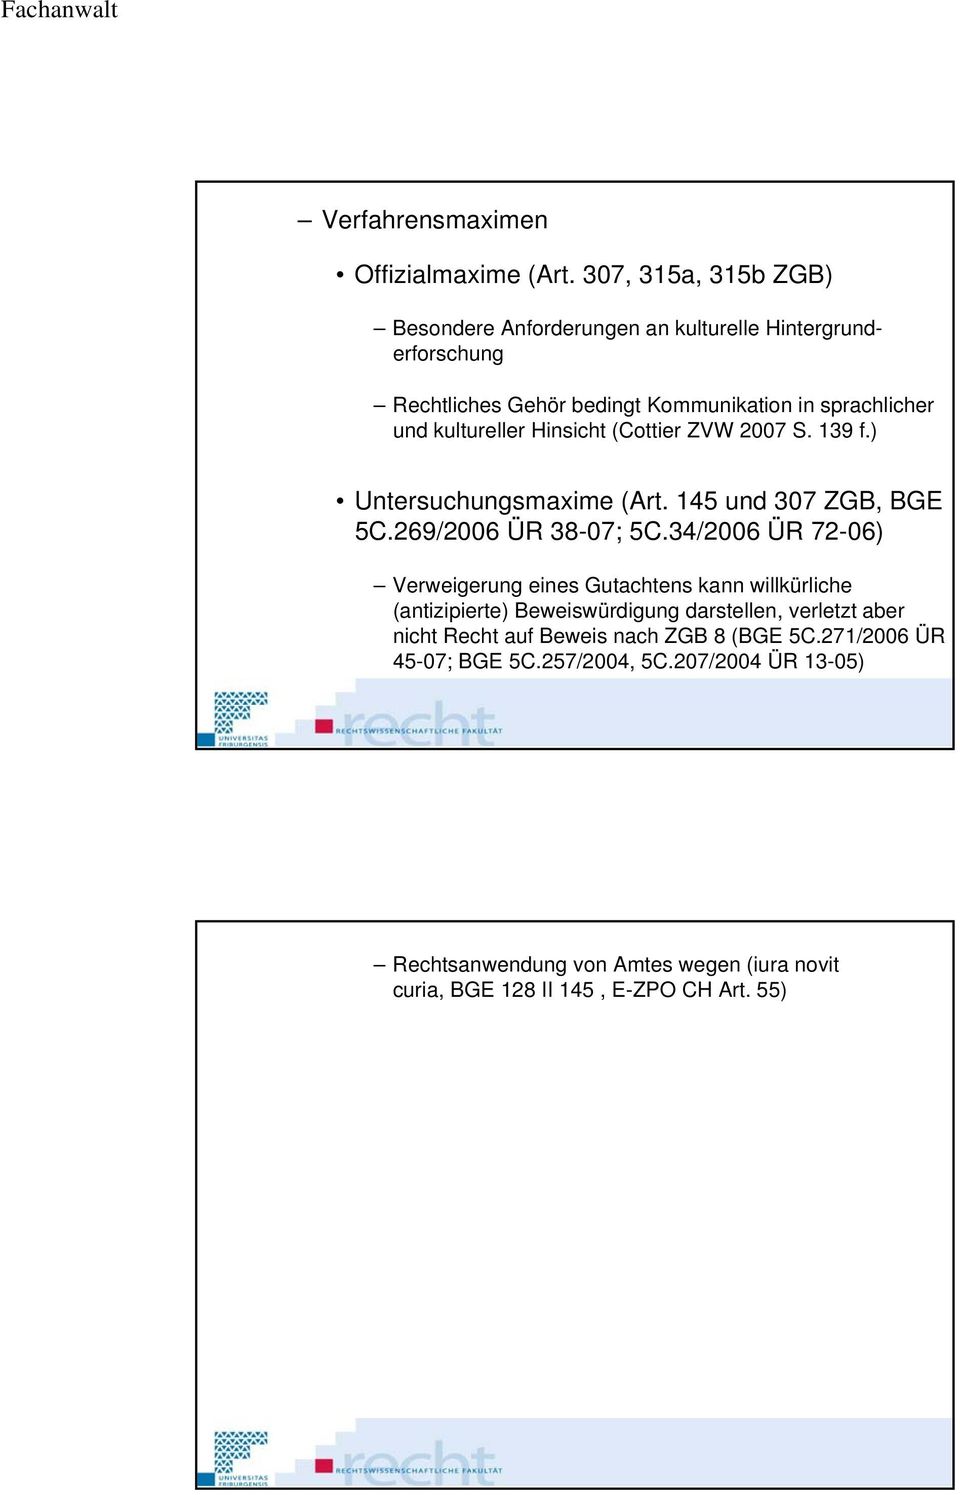 kultureller Hinsicht (Cottier ZVW 2007 S. 139 f.) Untersuchungsmaxime (Art. 145 und 307 ZGB, BGE 5C.269/2006 ÜR 38-07; 5C.